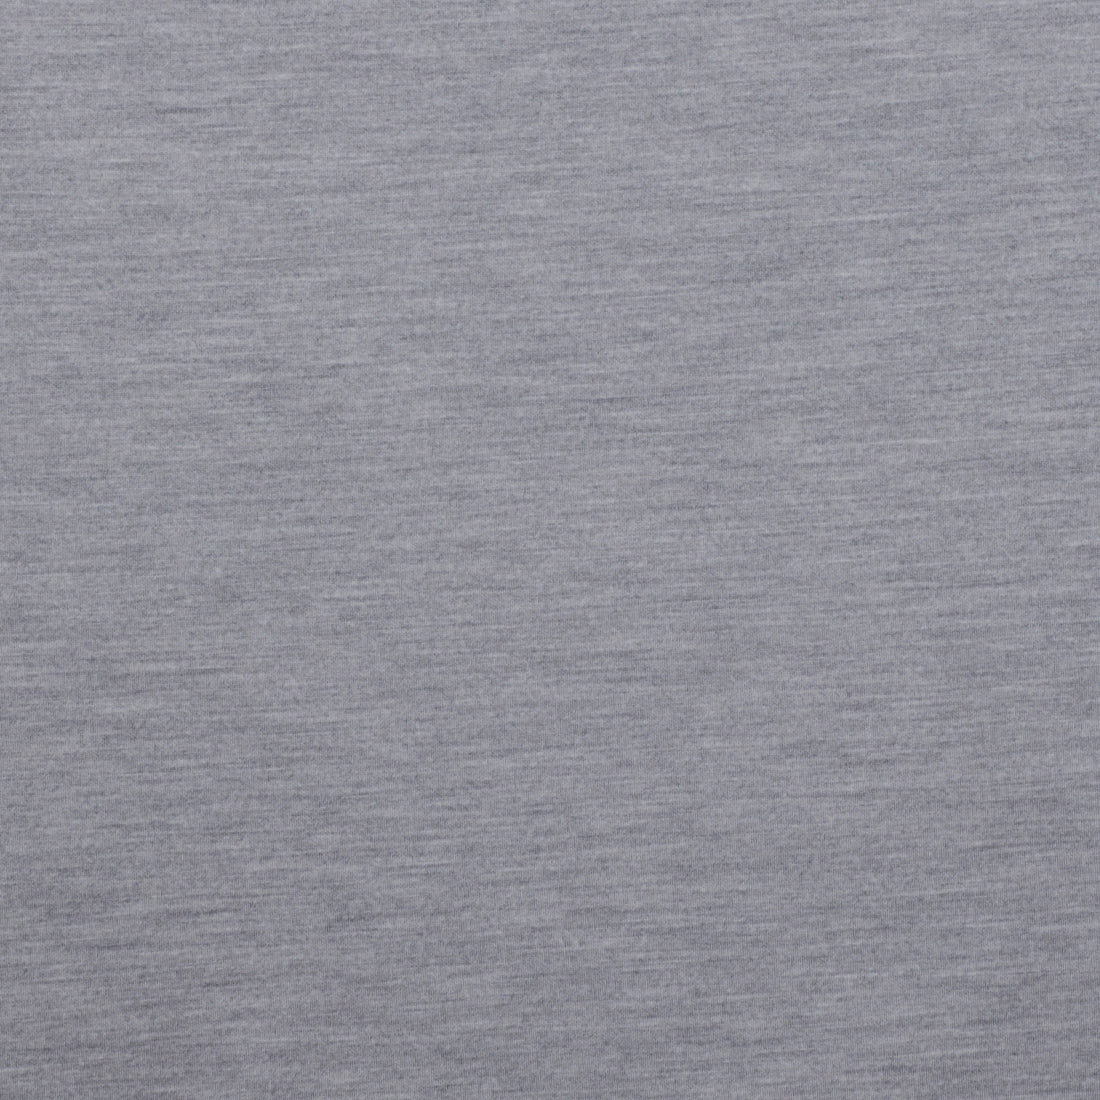 Wool - Italian Double Knit Jersey - Dark Grey